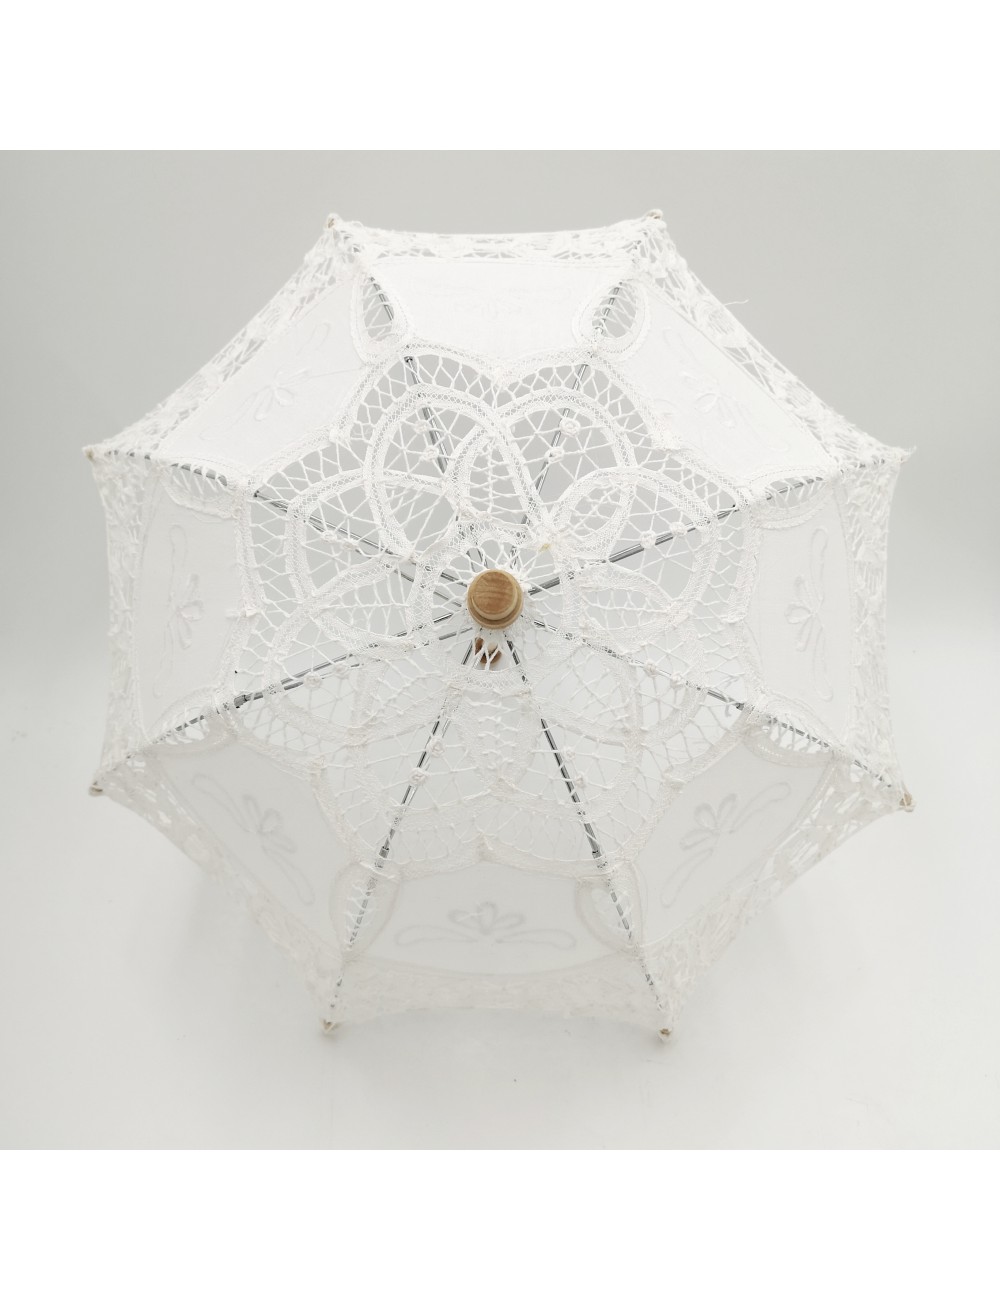 parasolka biała ażurowa retro vintage do zdjęć